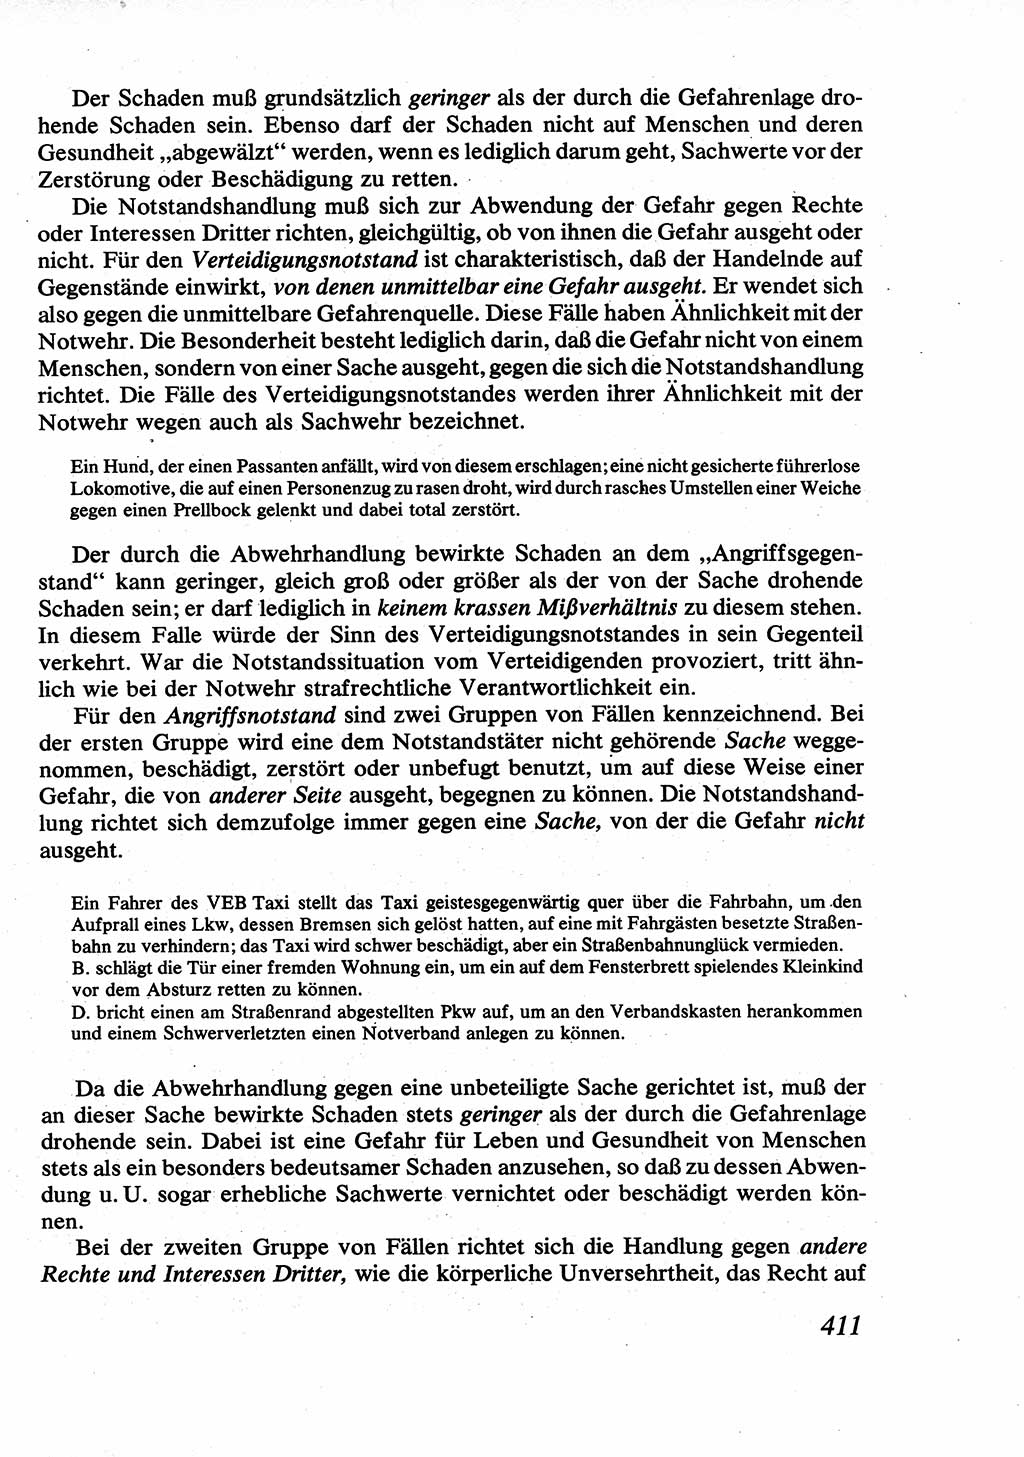 Strafrecht [Deutsche Demokratische Republik (DDR)], Allgemeiner Teil, Lehrbuch 1976, Seite 411 (Strafr. DDR AT Lb. 1976, S. 411)